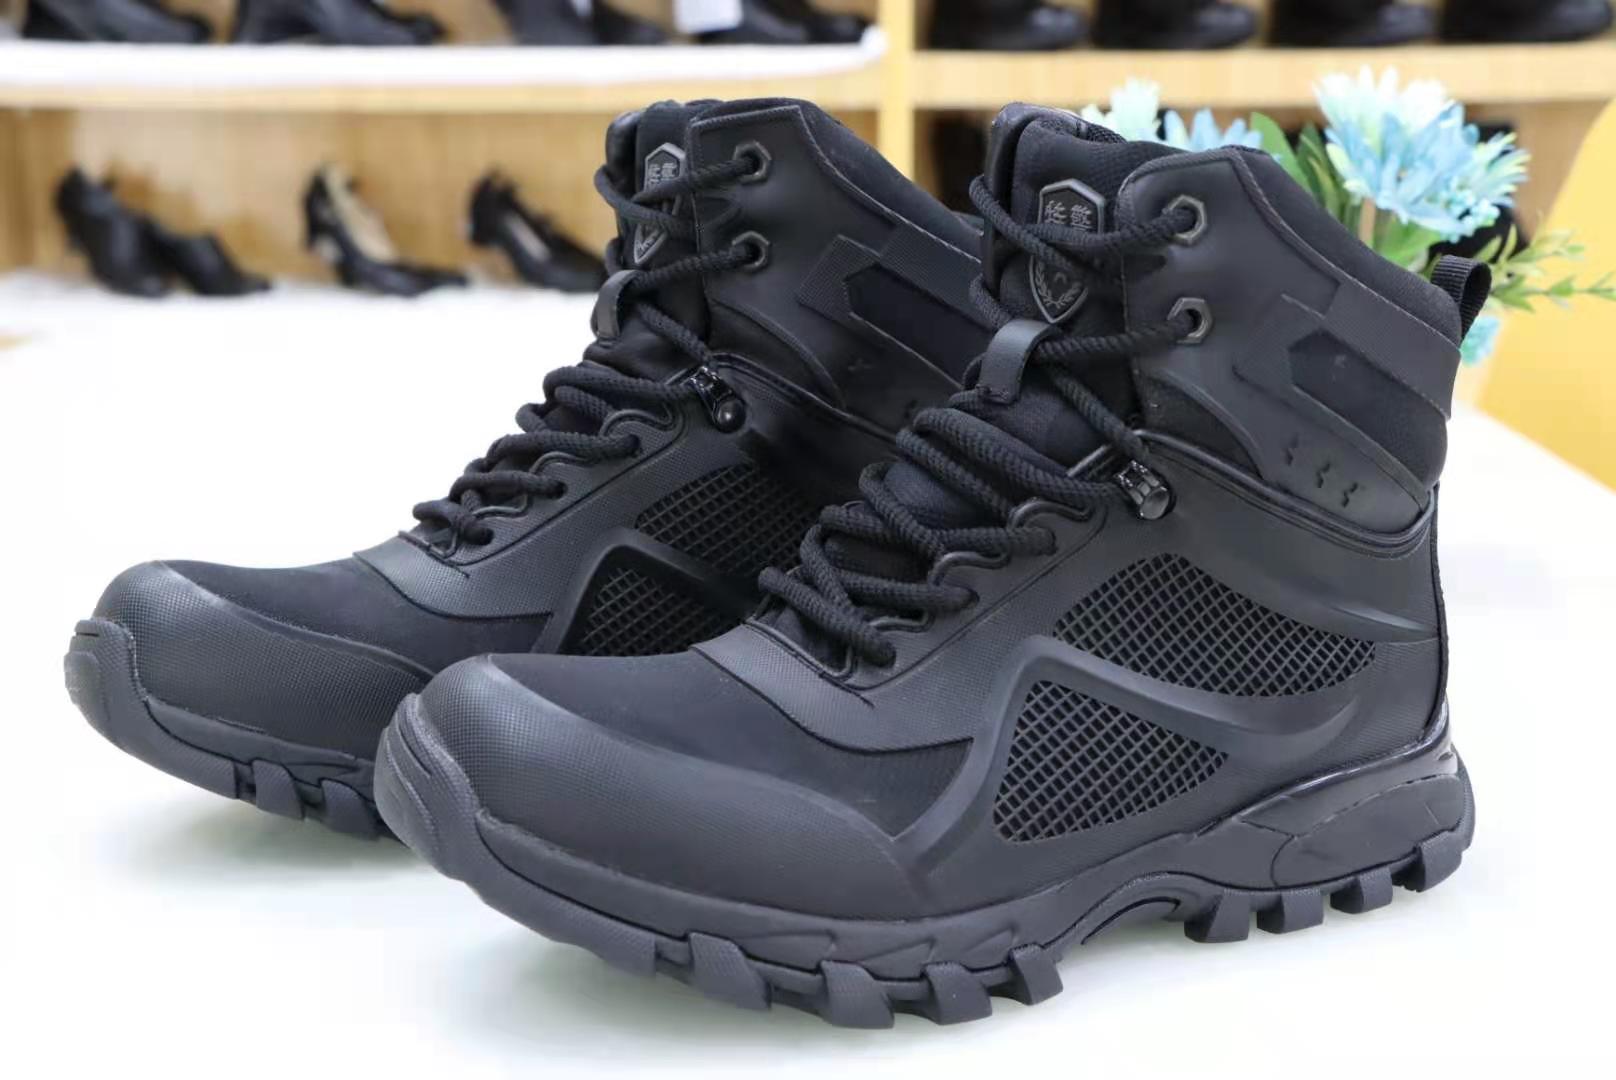 高端军警作战靴——君洛克R23021 多功能特种作战靴